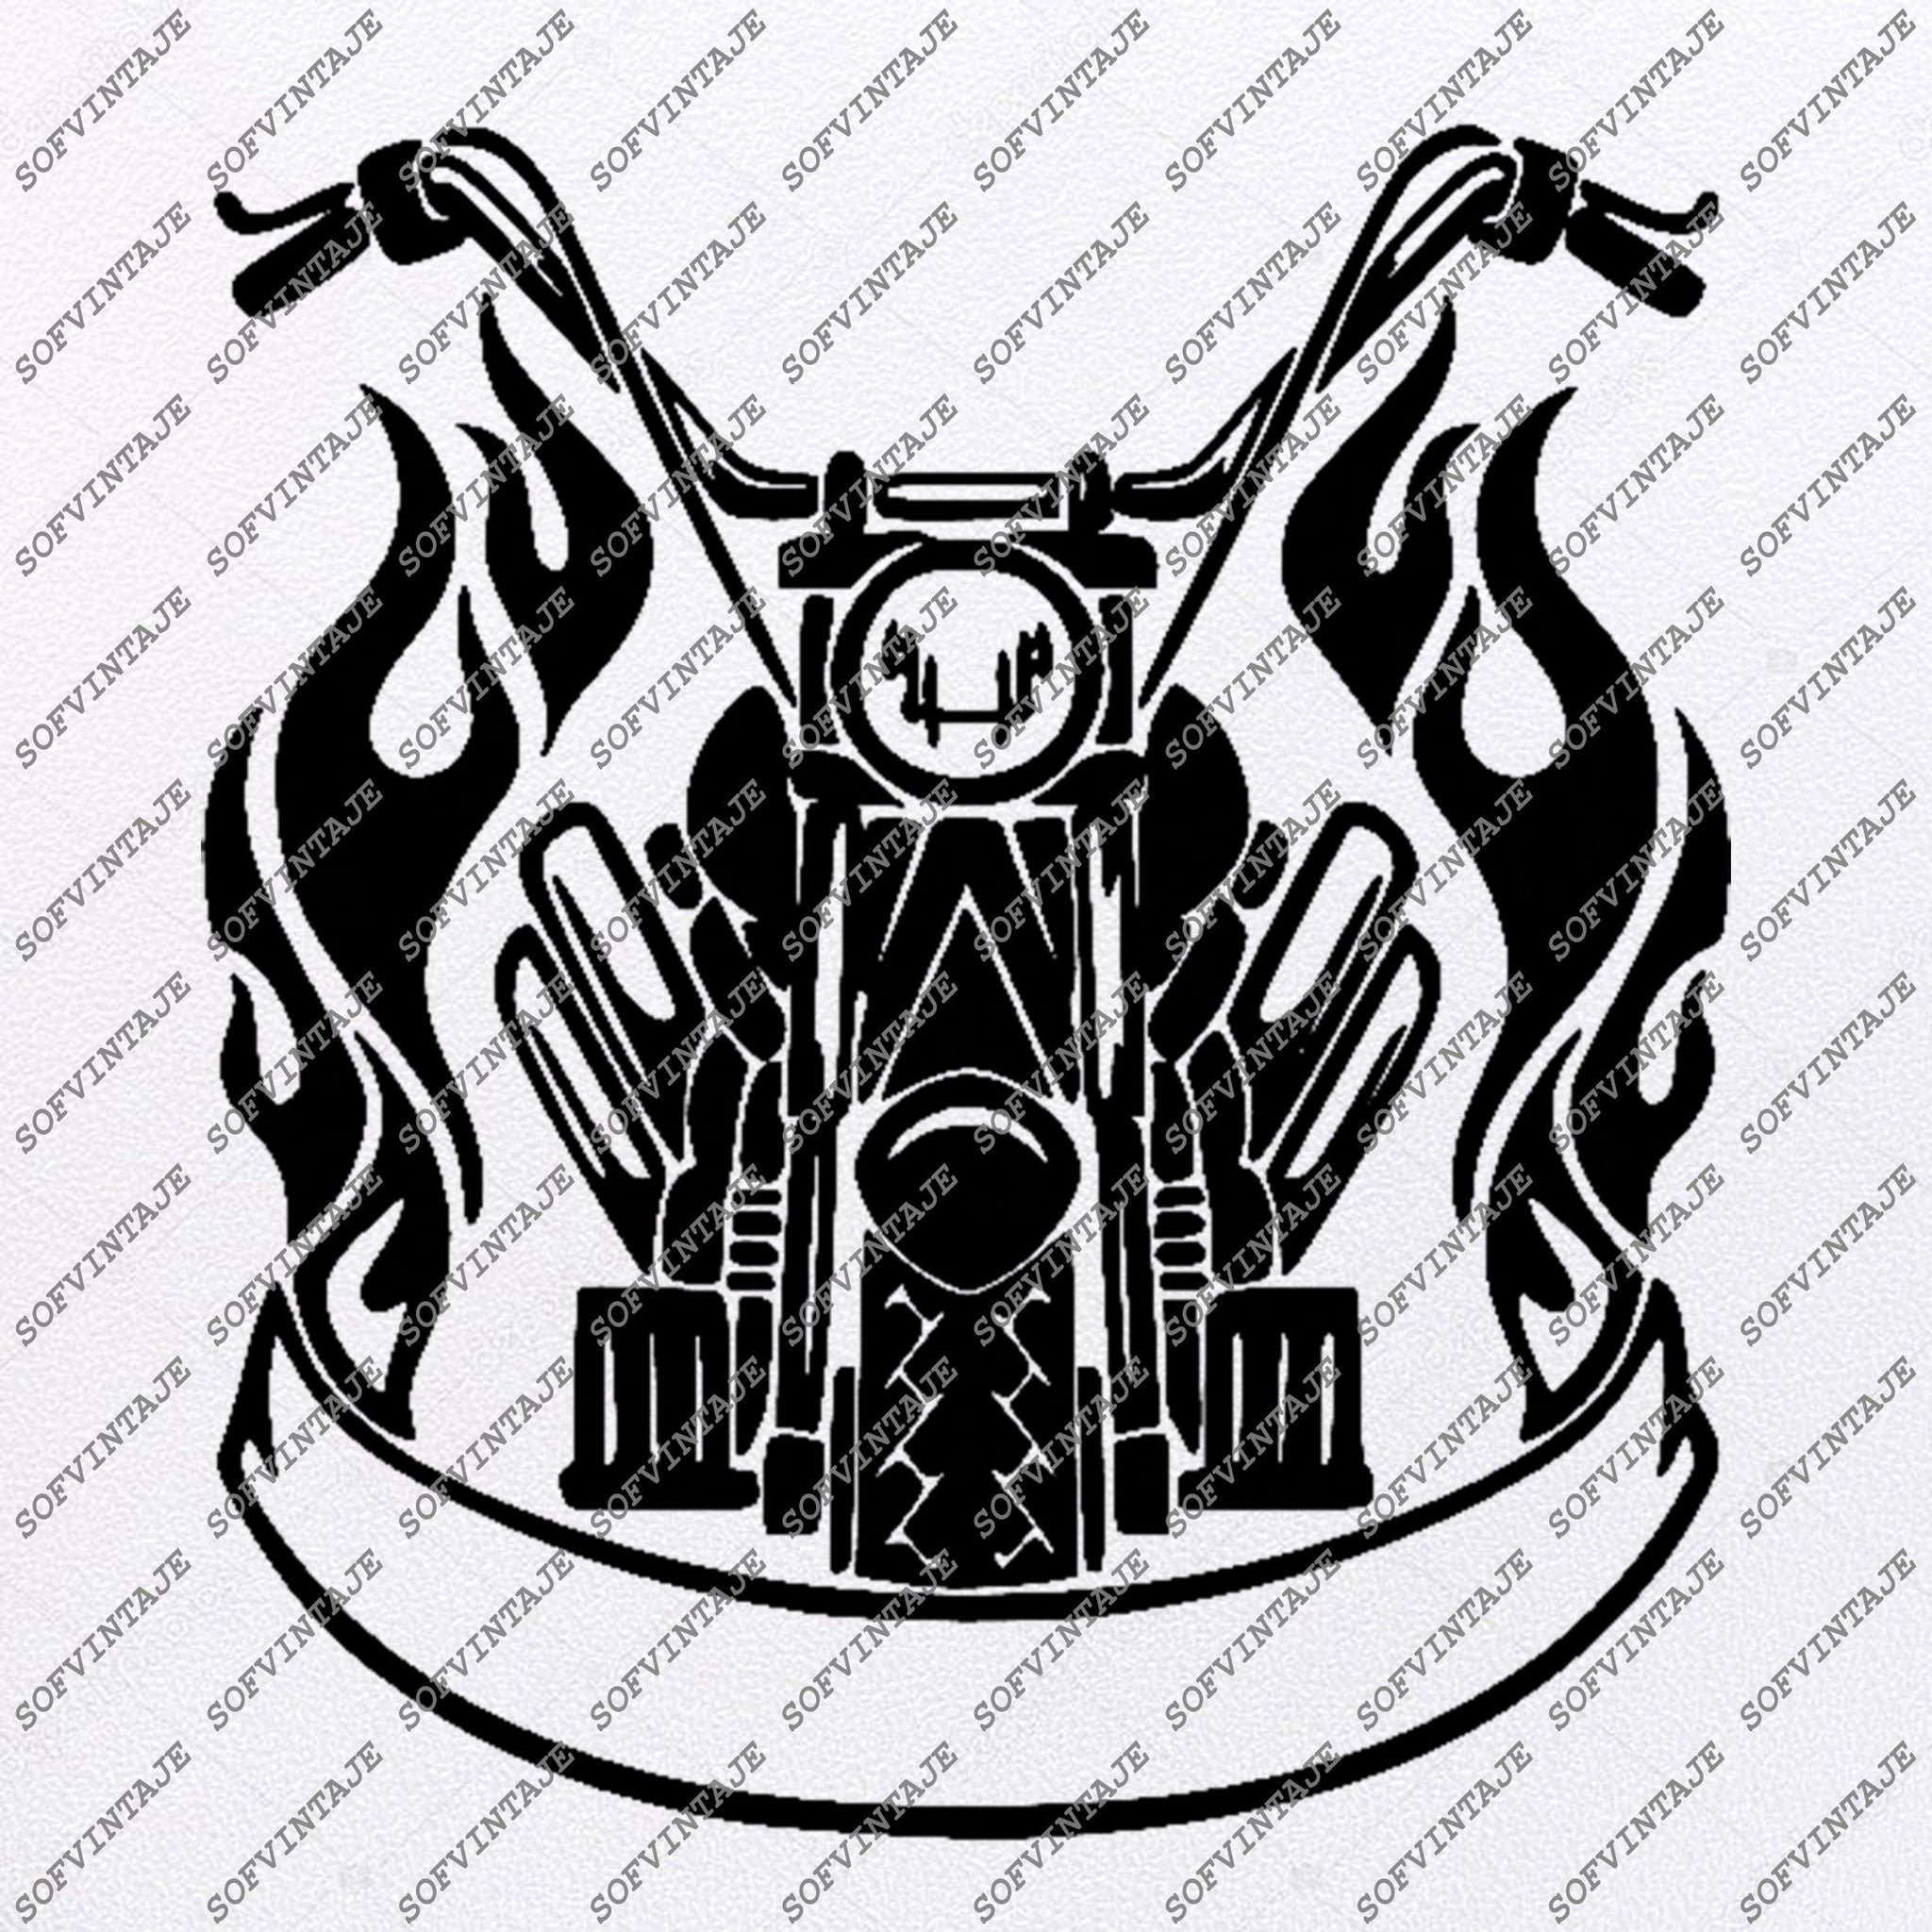 Download Harley Davidson-Motorcycle Harley Davidson Svg File-Vector Graphics-Sv - SOFVINTAJE